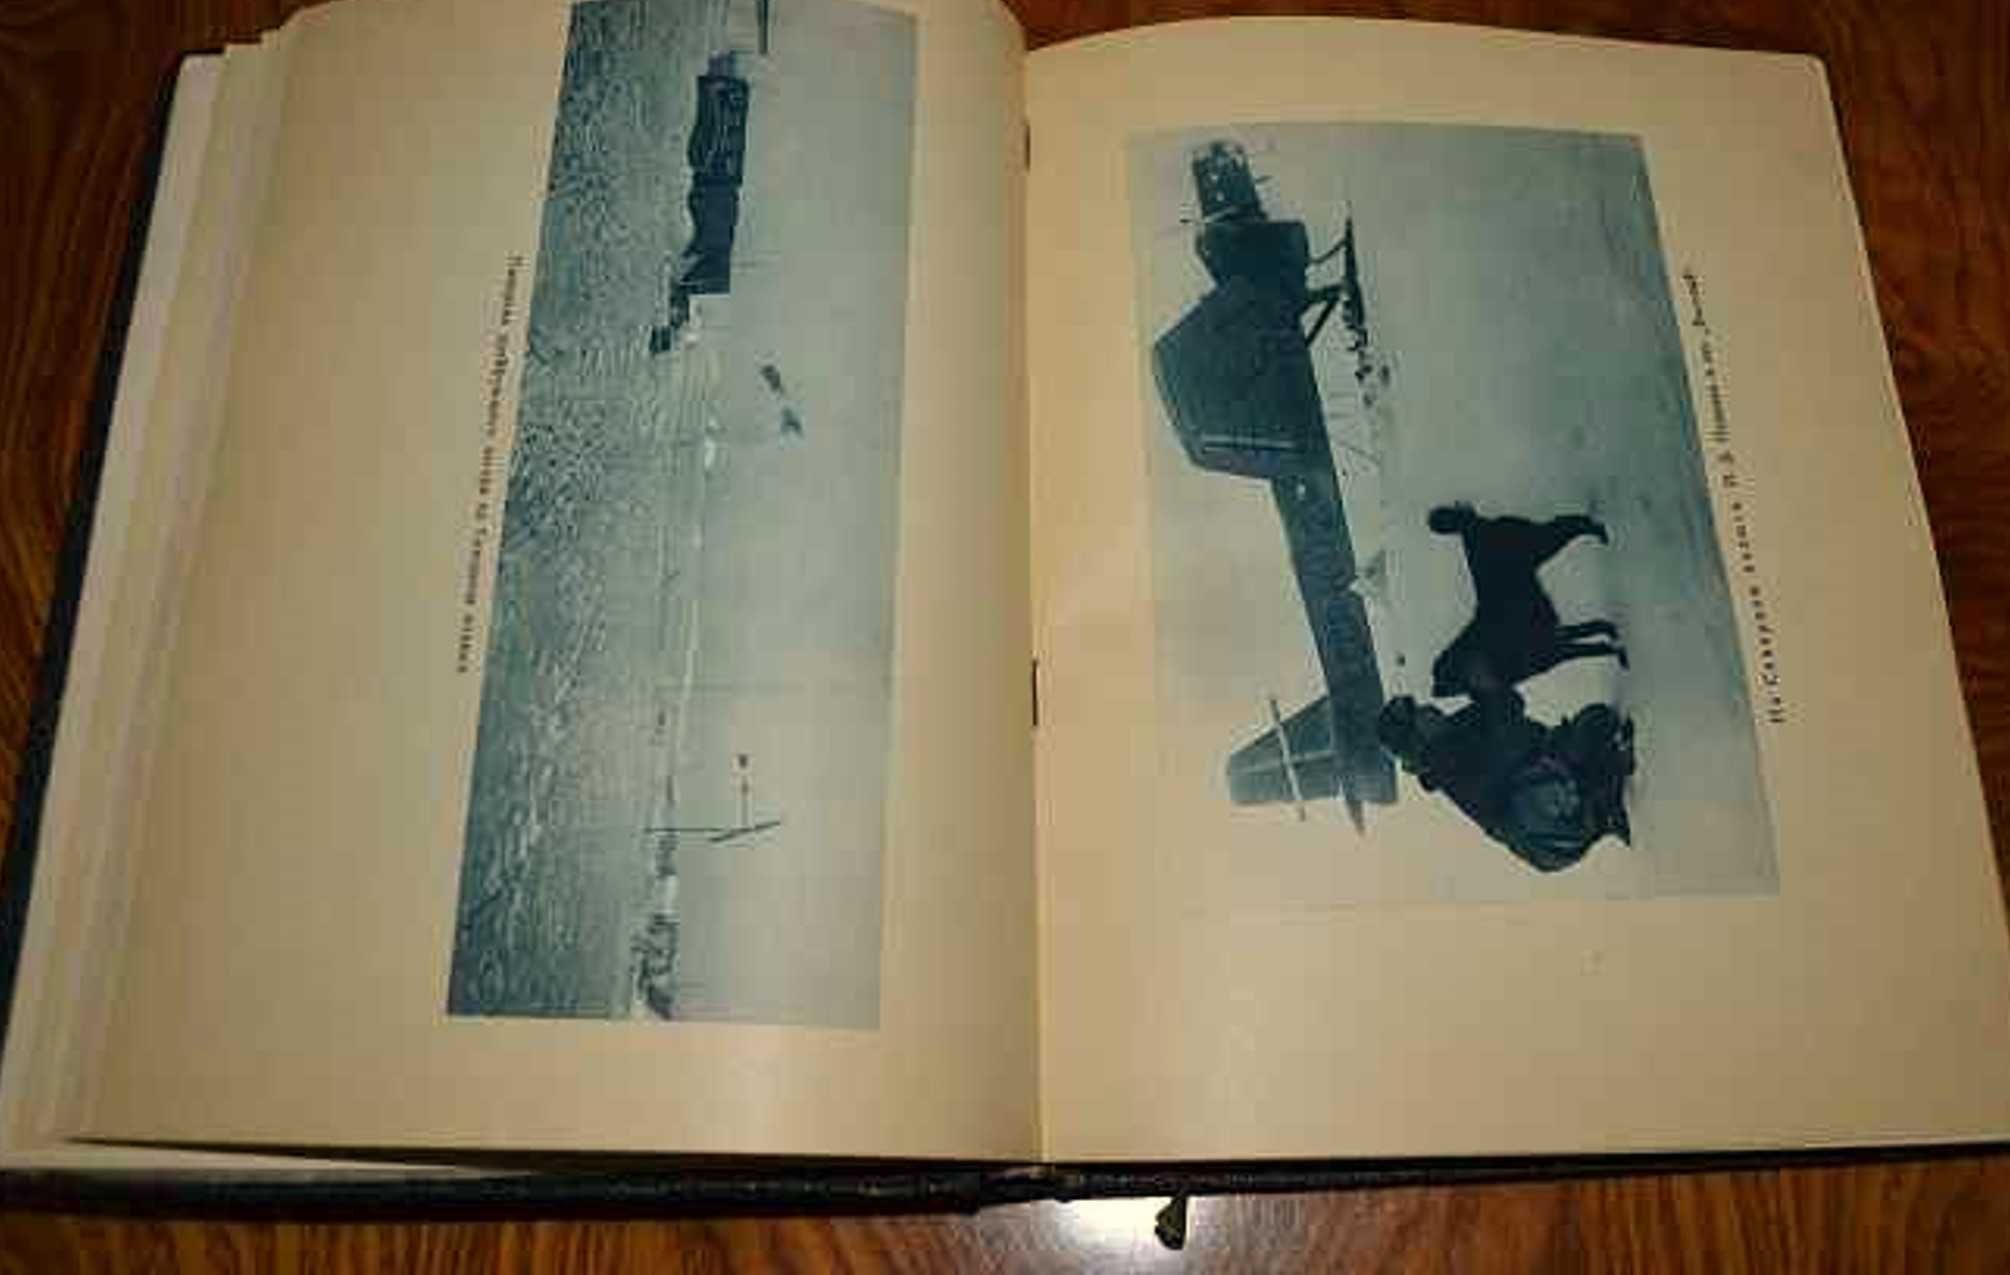 1938г. "Жизнь на льдине", И.Д.Папанин. Прижизненное издание